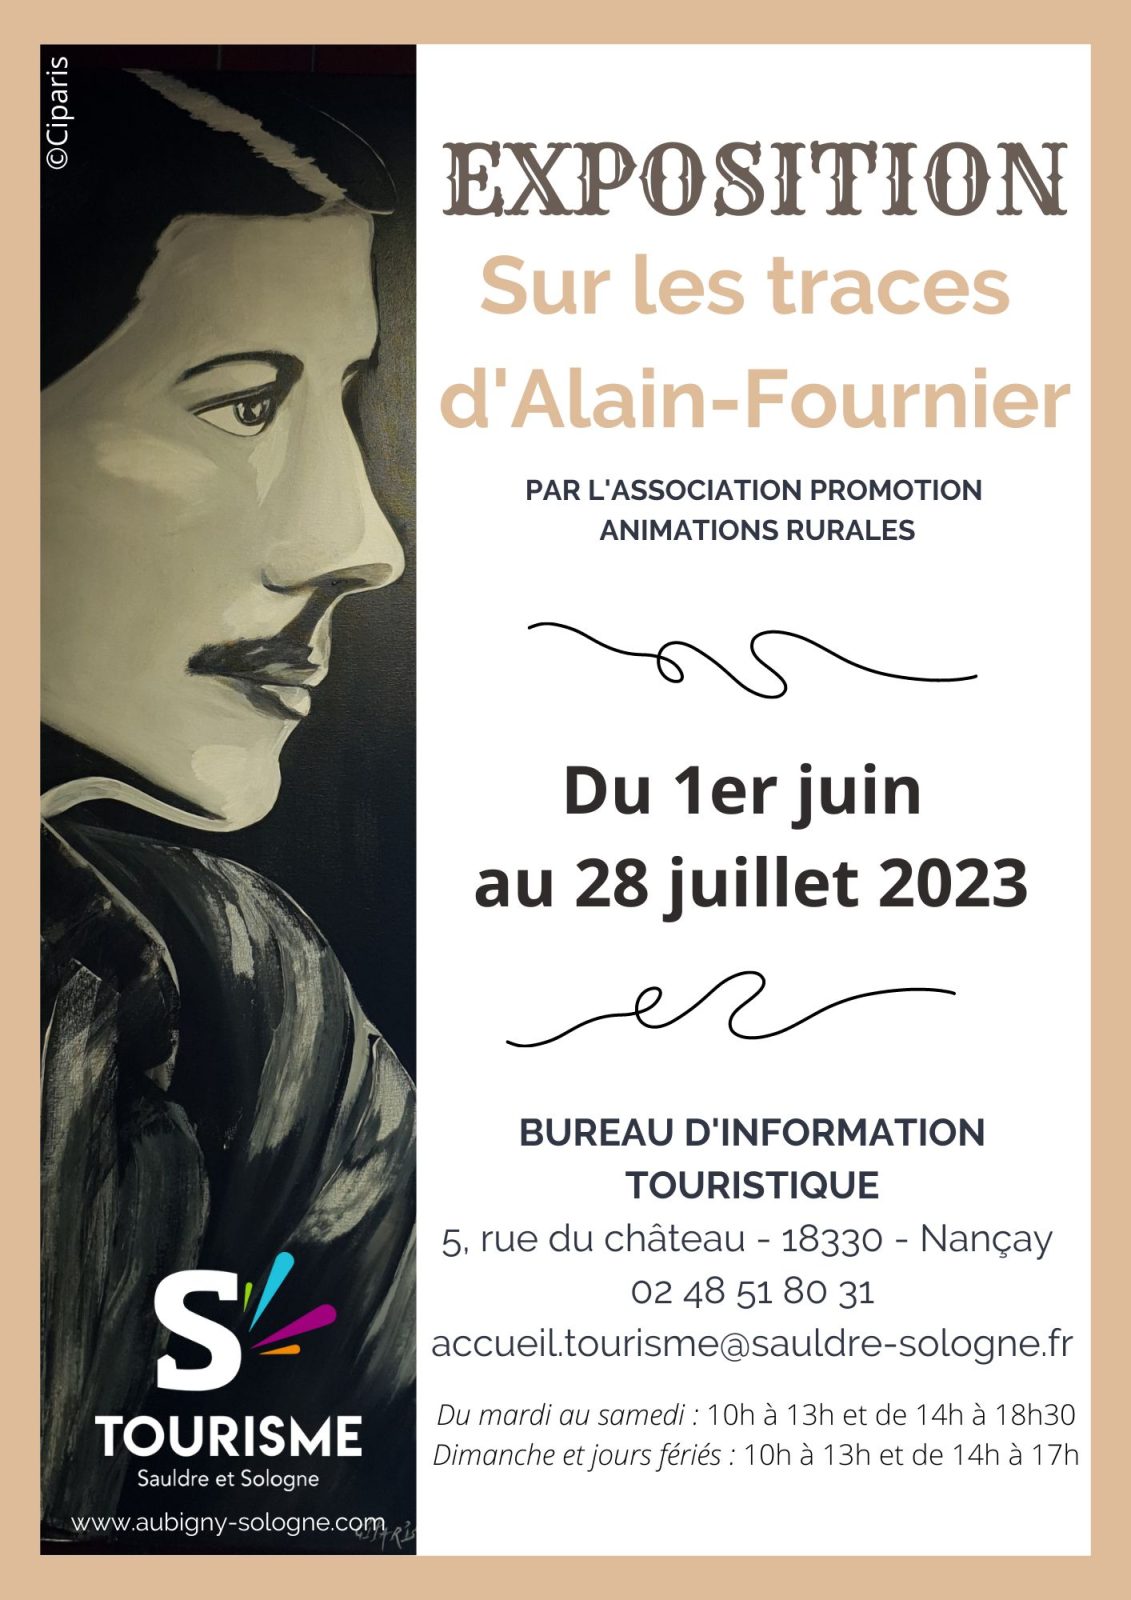 Sur les traces d’Alain-Fournier